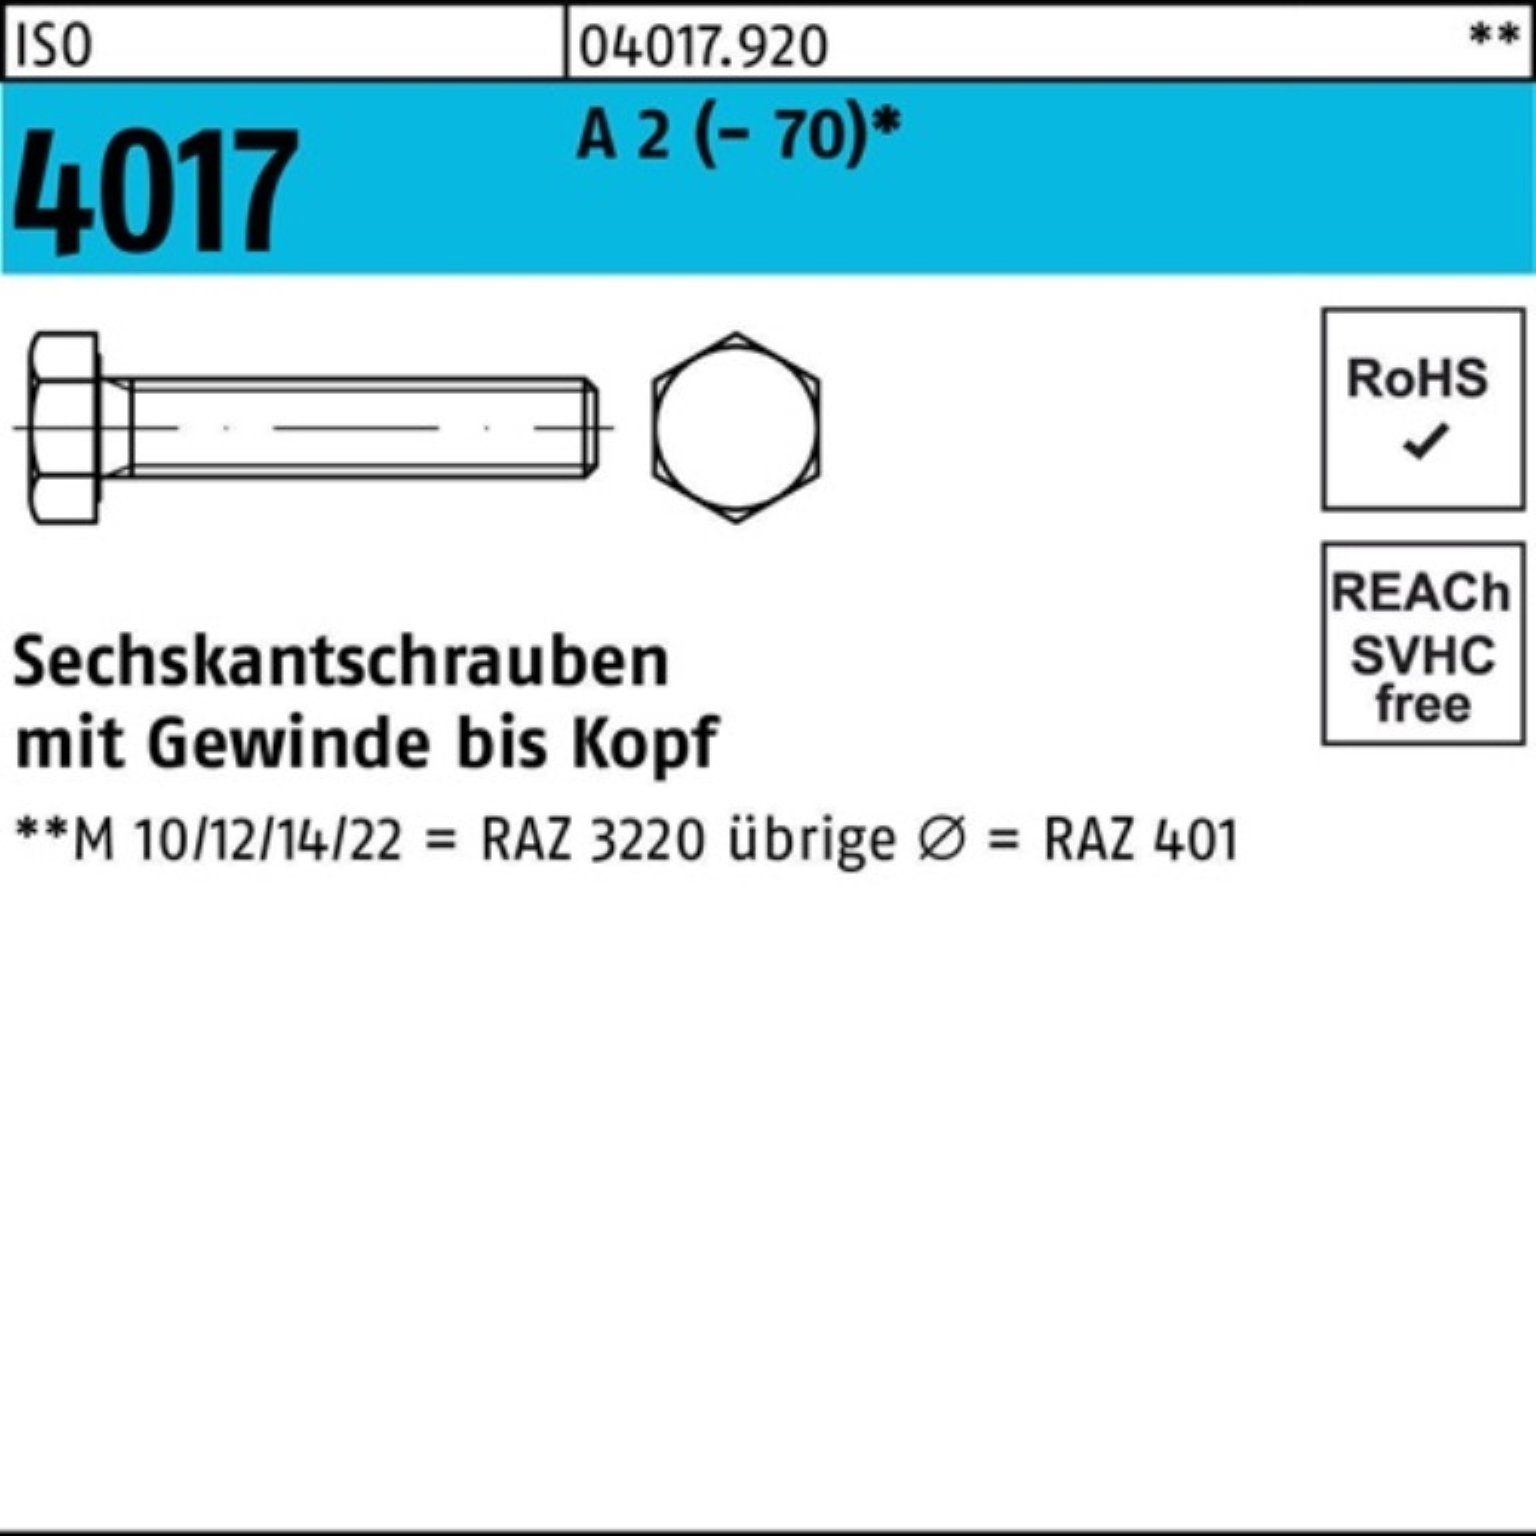 ISO Pack Sechskantschraube 200er 2 Bufab 4017 VG A M8x Stück Sechskantschraube 200 (70) 40